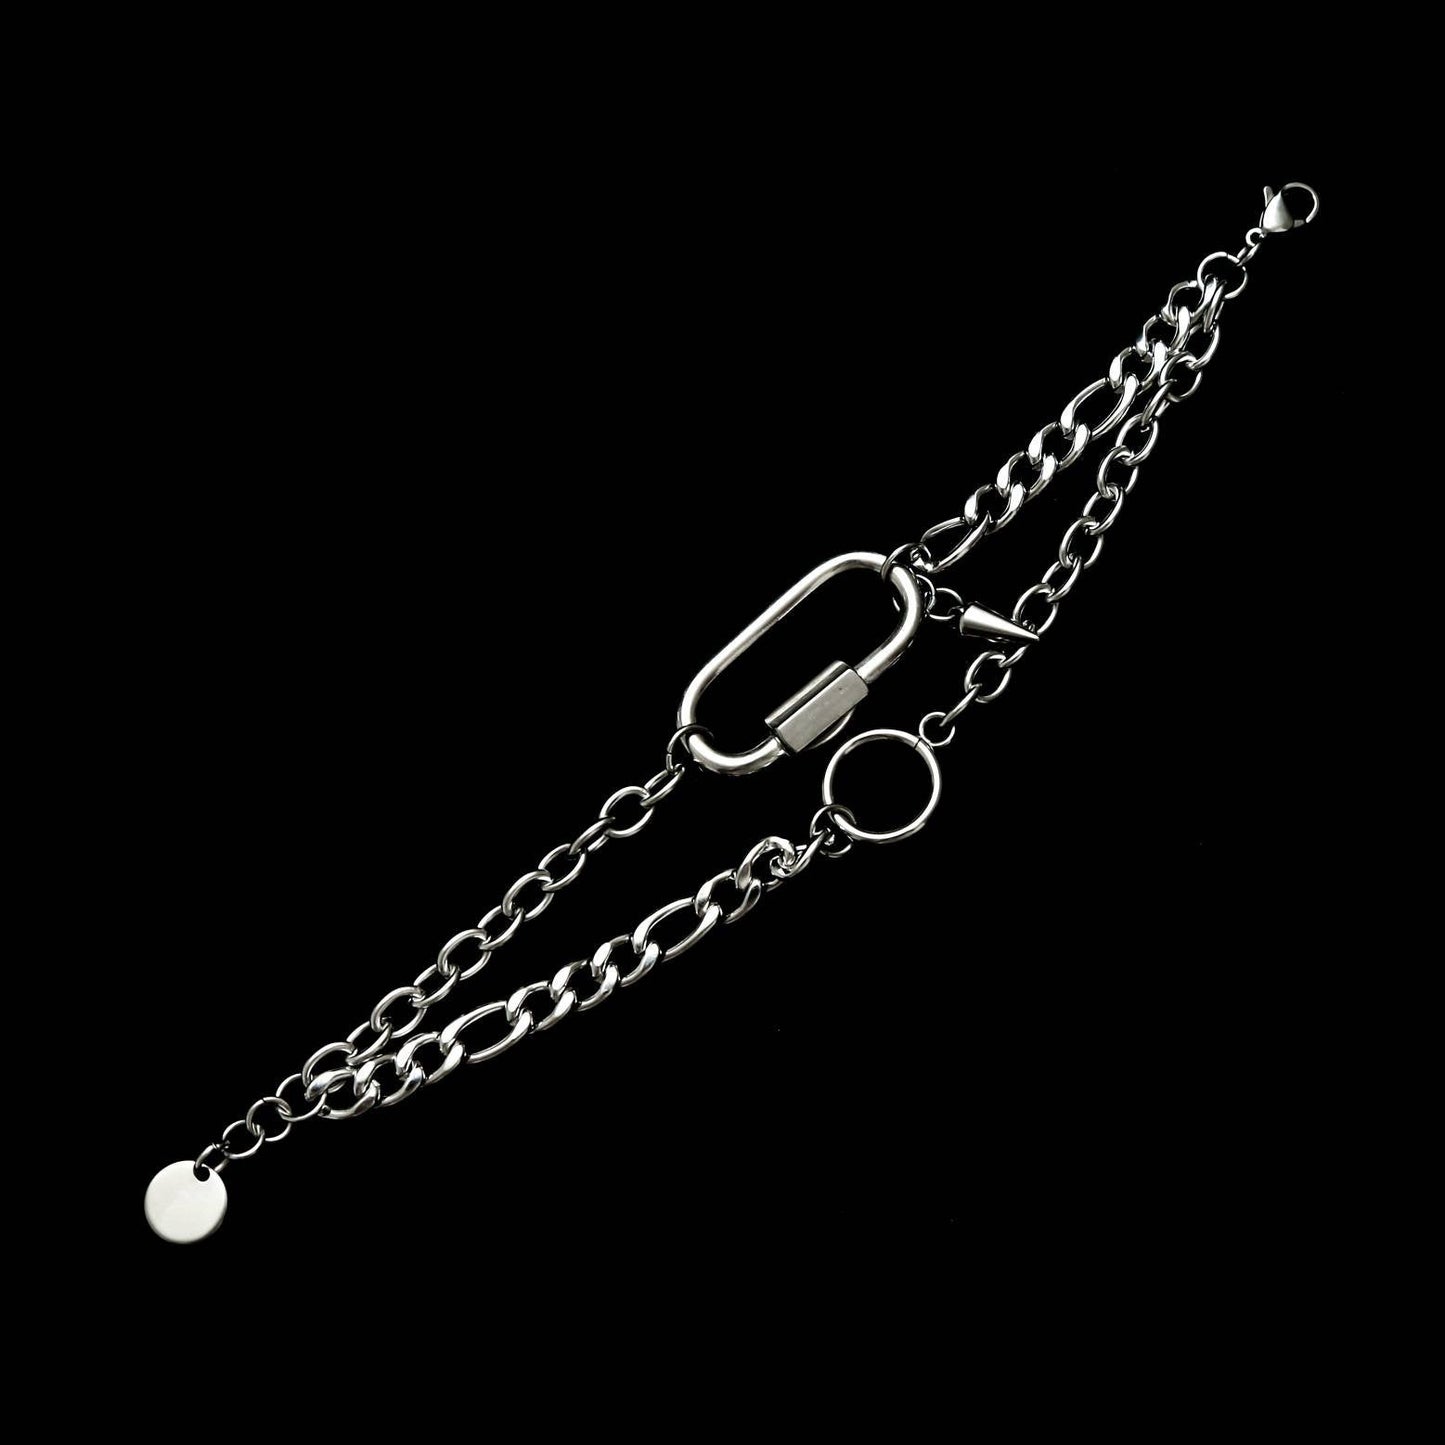 LV3: AM001 Bracelet